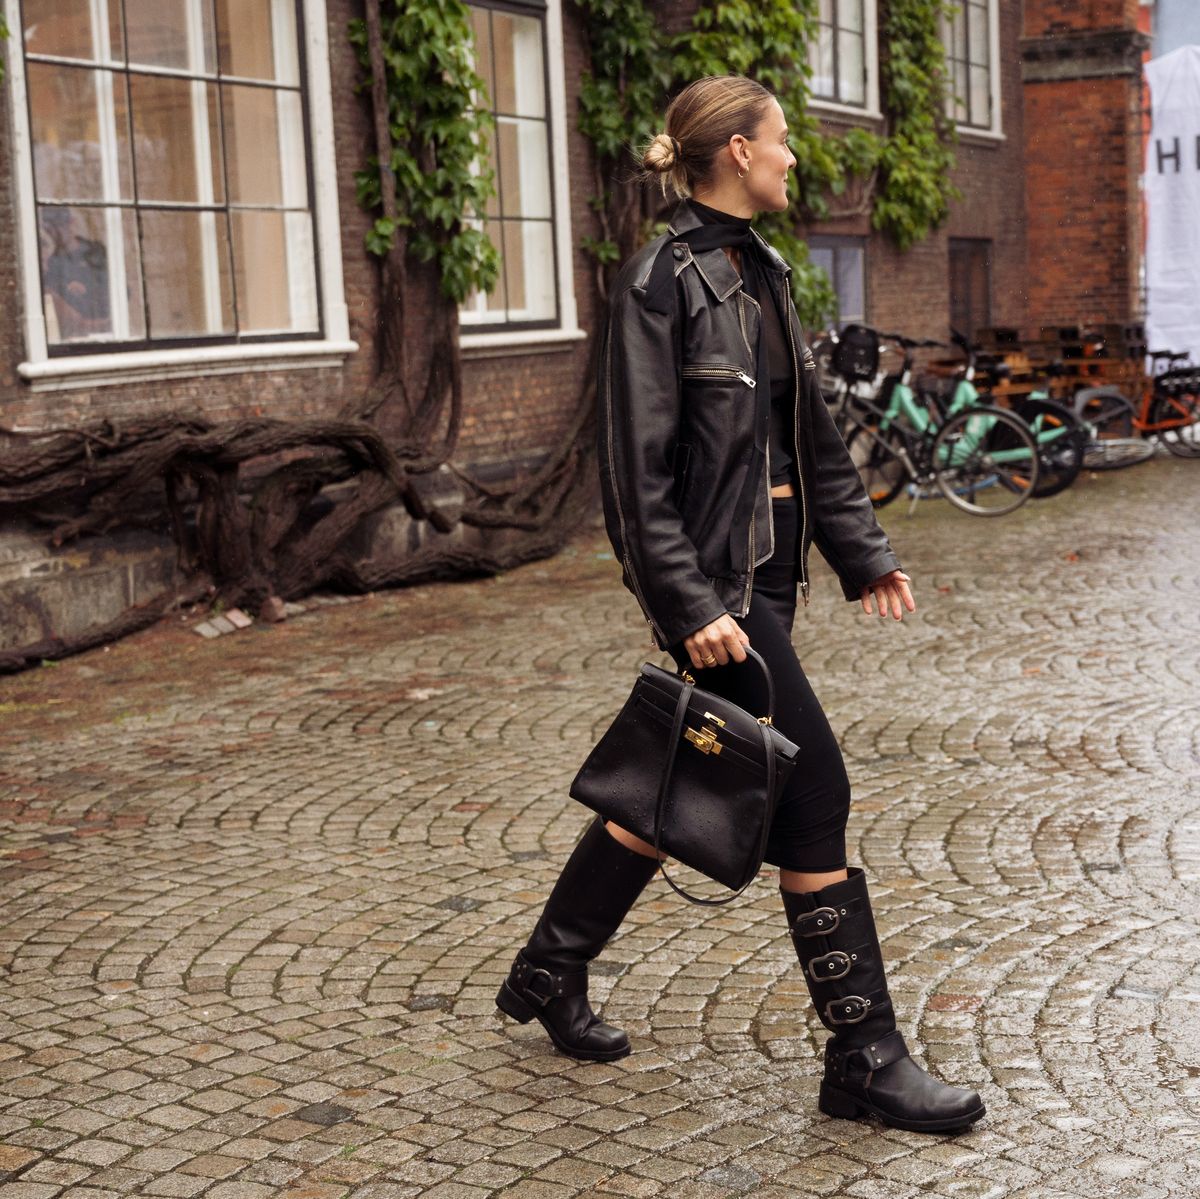 Cómo combinar botas negras? ¡Conoce su popular estilo biker!